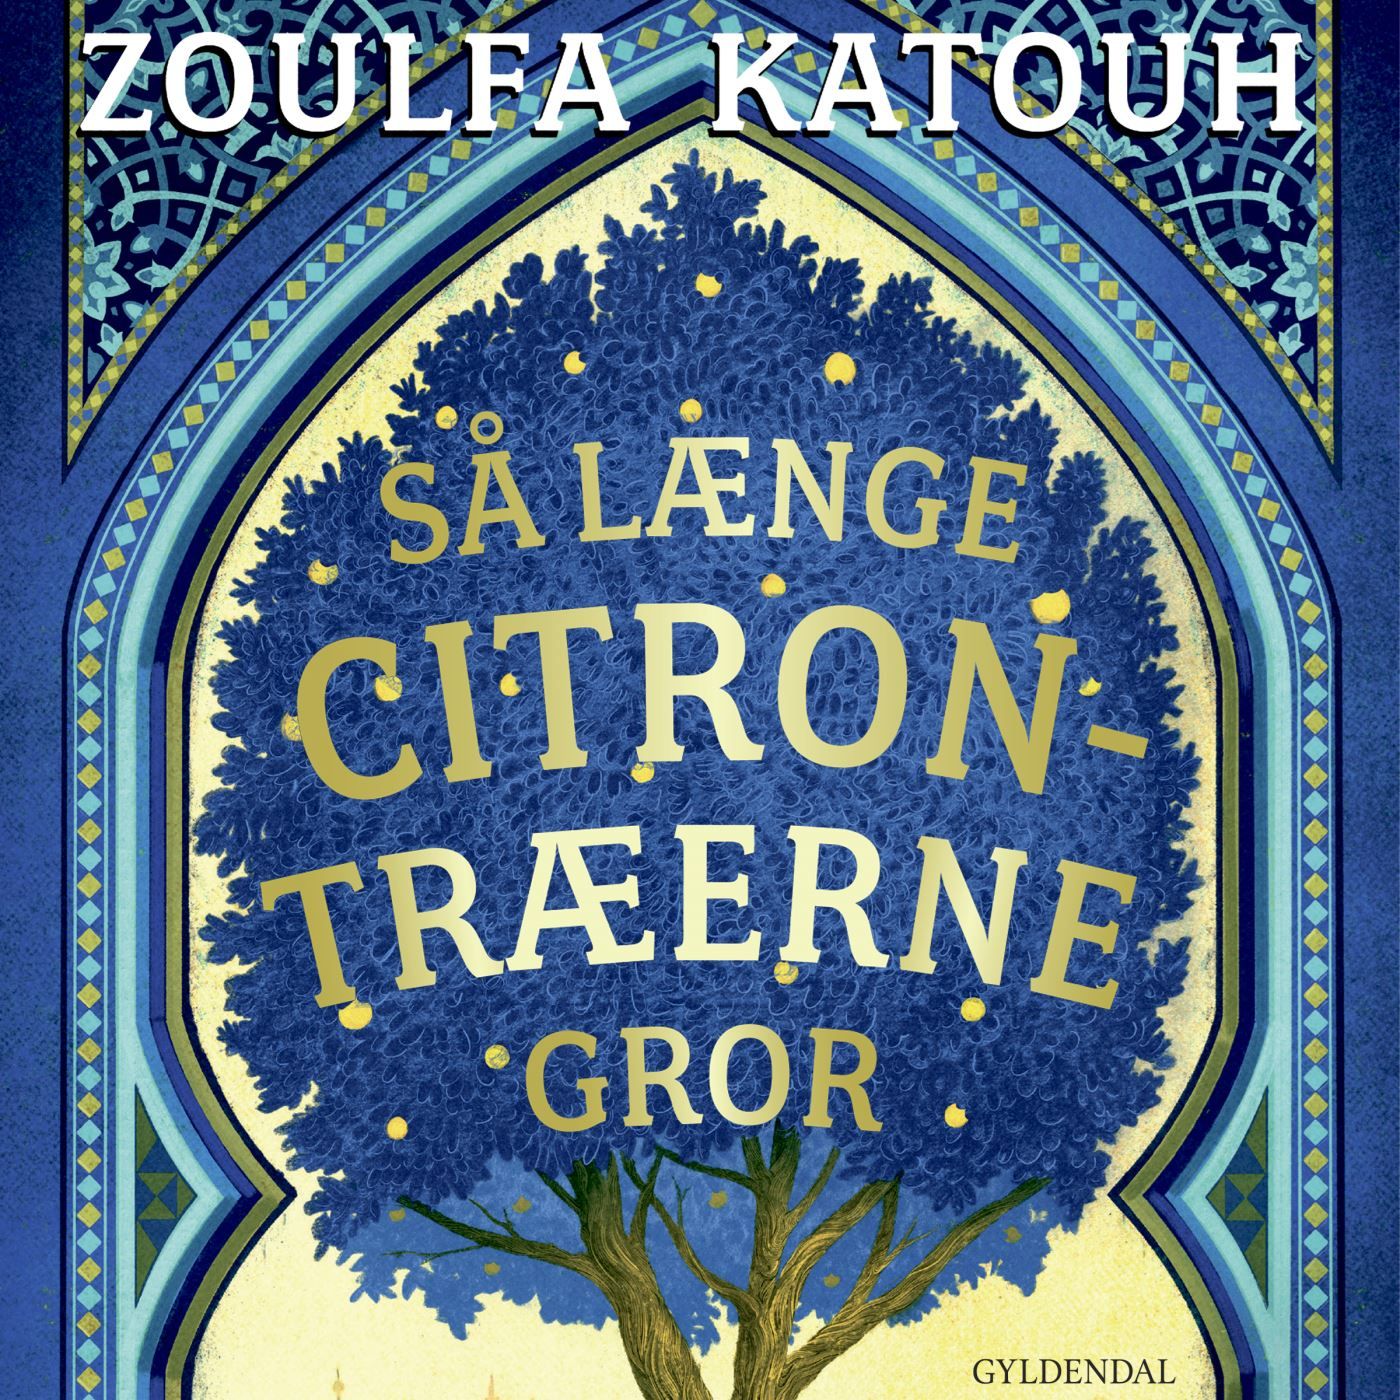 Så længe citrontræerne gror, lydbog af Zoulfa Katouh